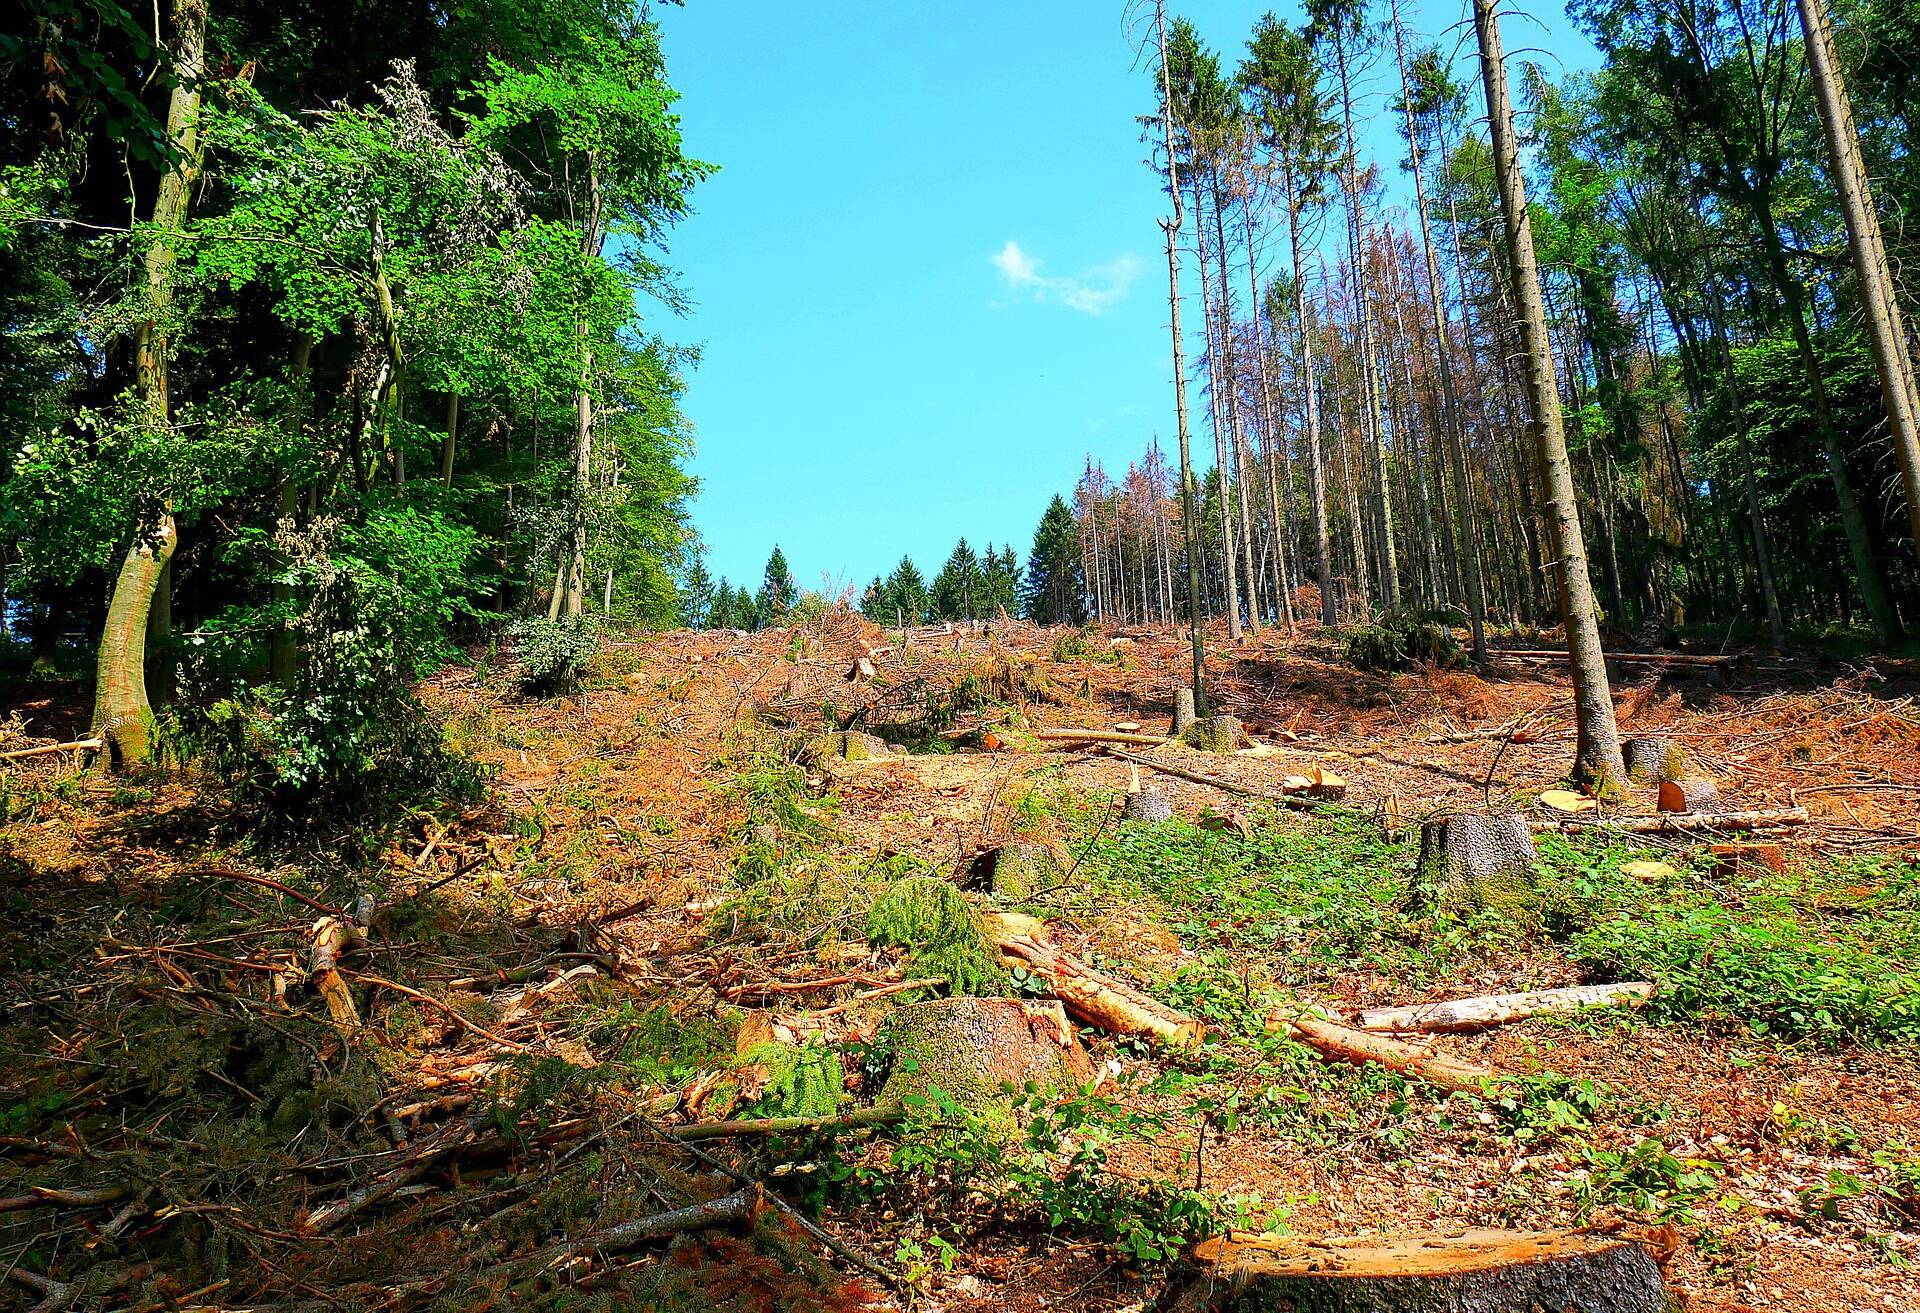 Fällarbeiten machen Waldwegen zu schaffen